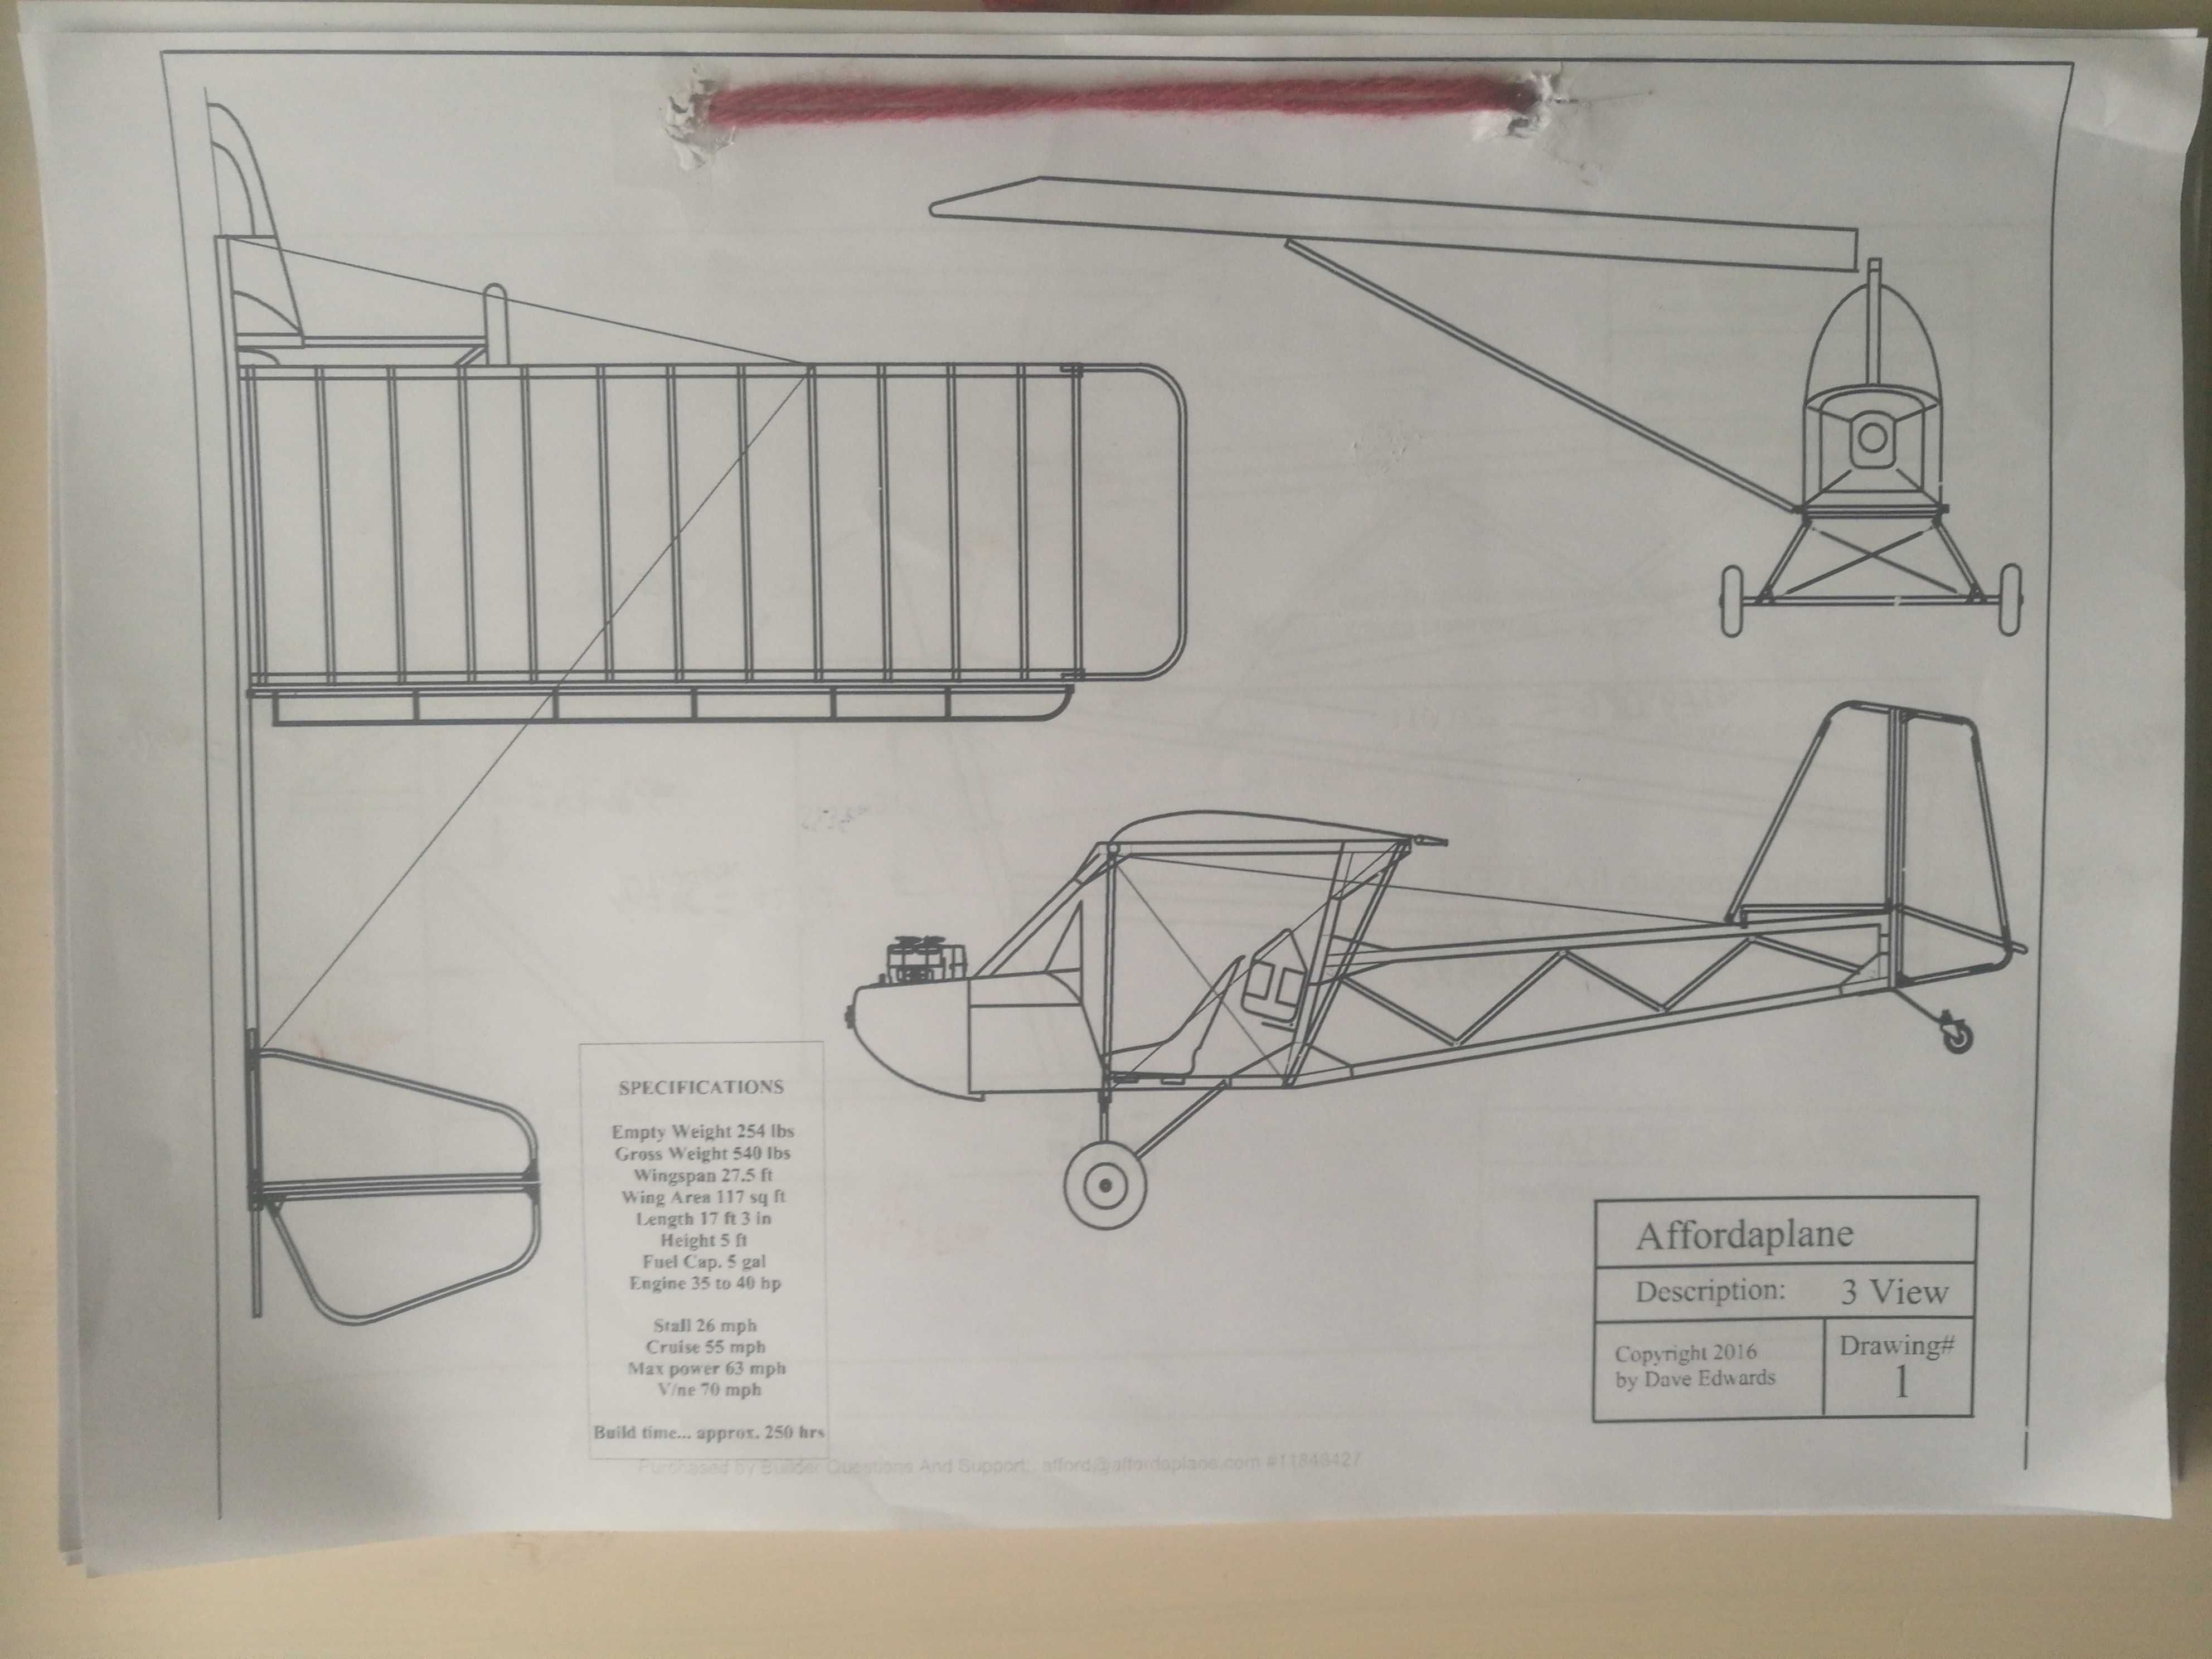 Plany samolotu Affordaplane, do amatorskiej budowy.